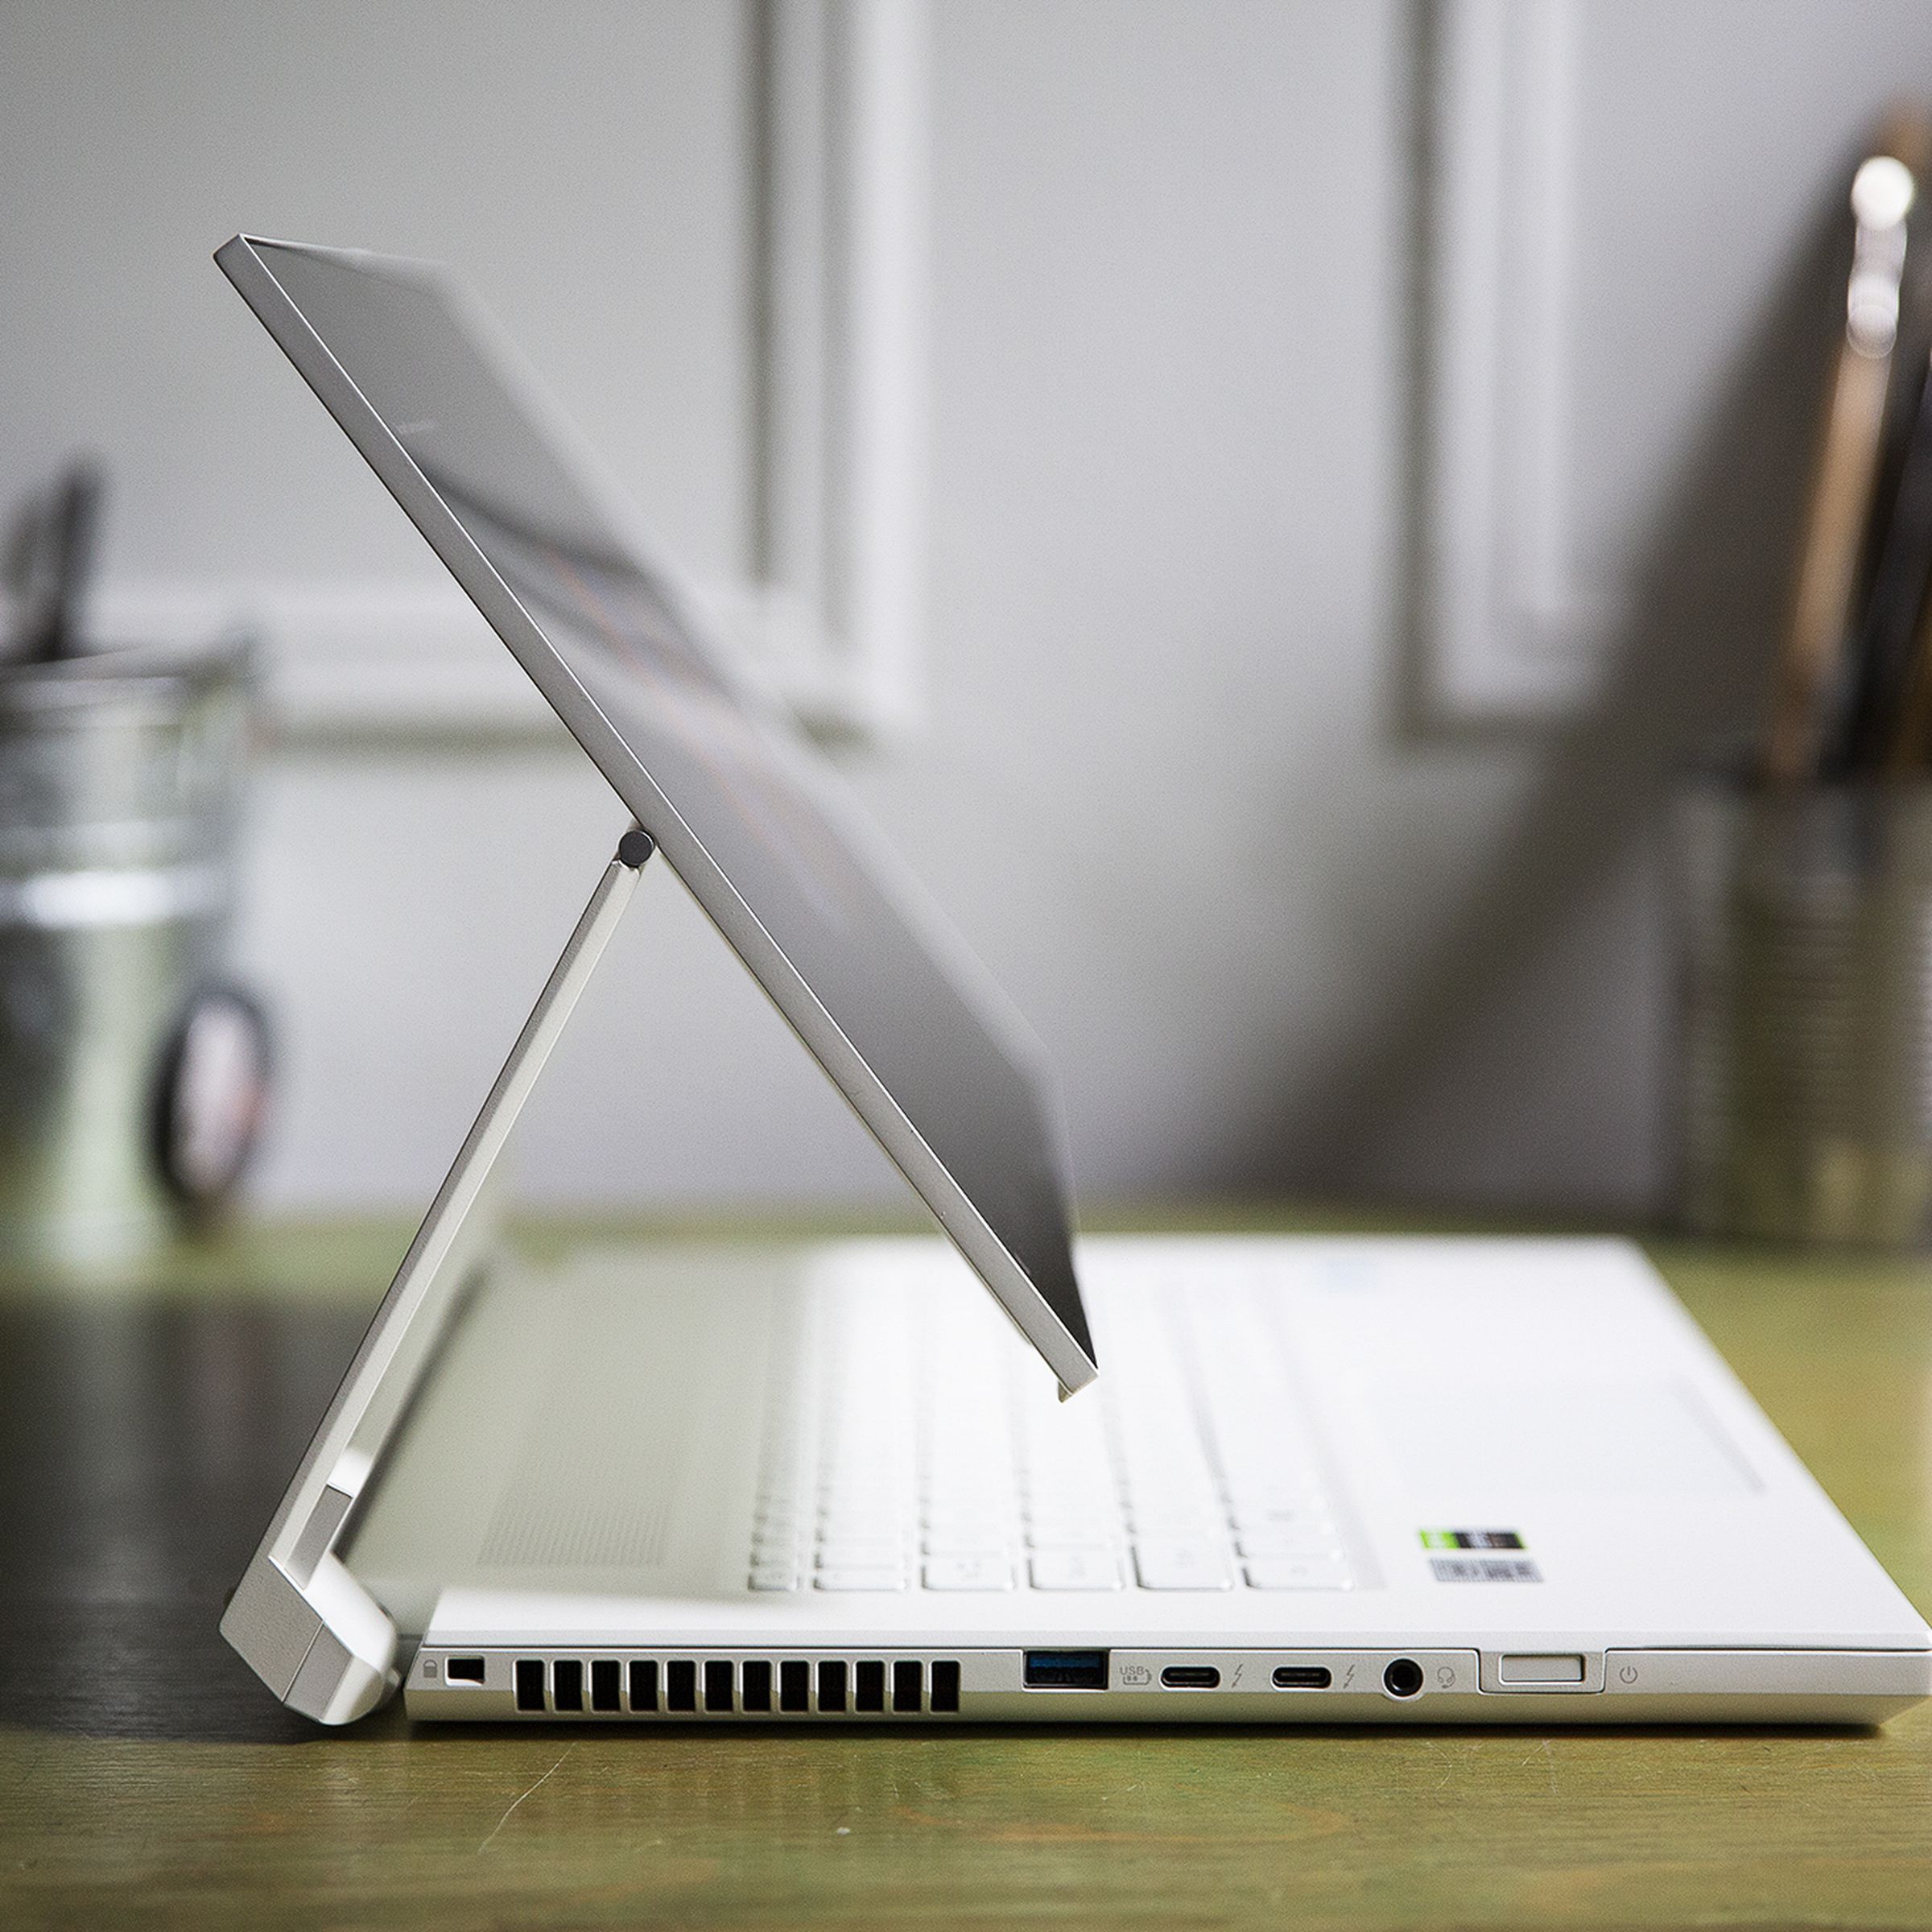 Best laptop 2021: Acer ConceptD 7 Ezel